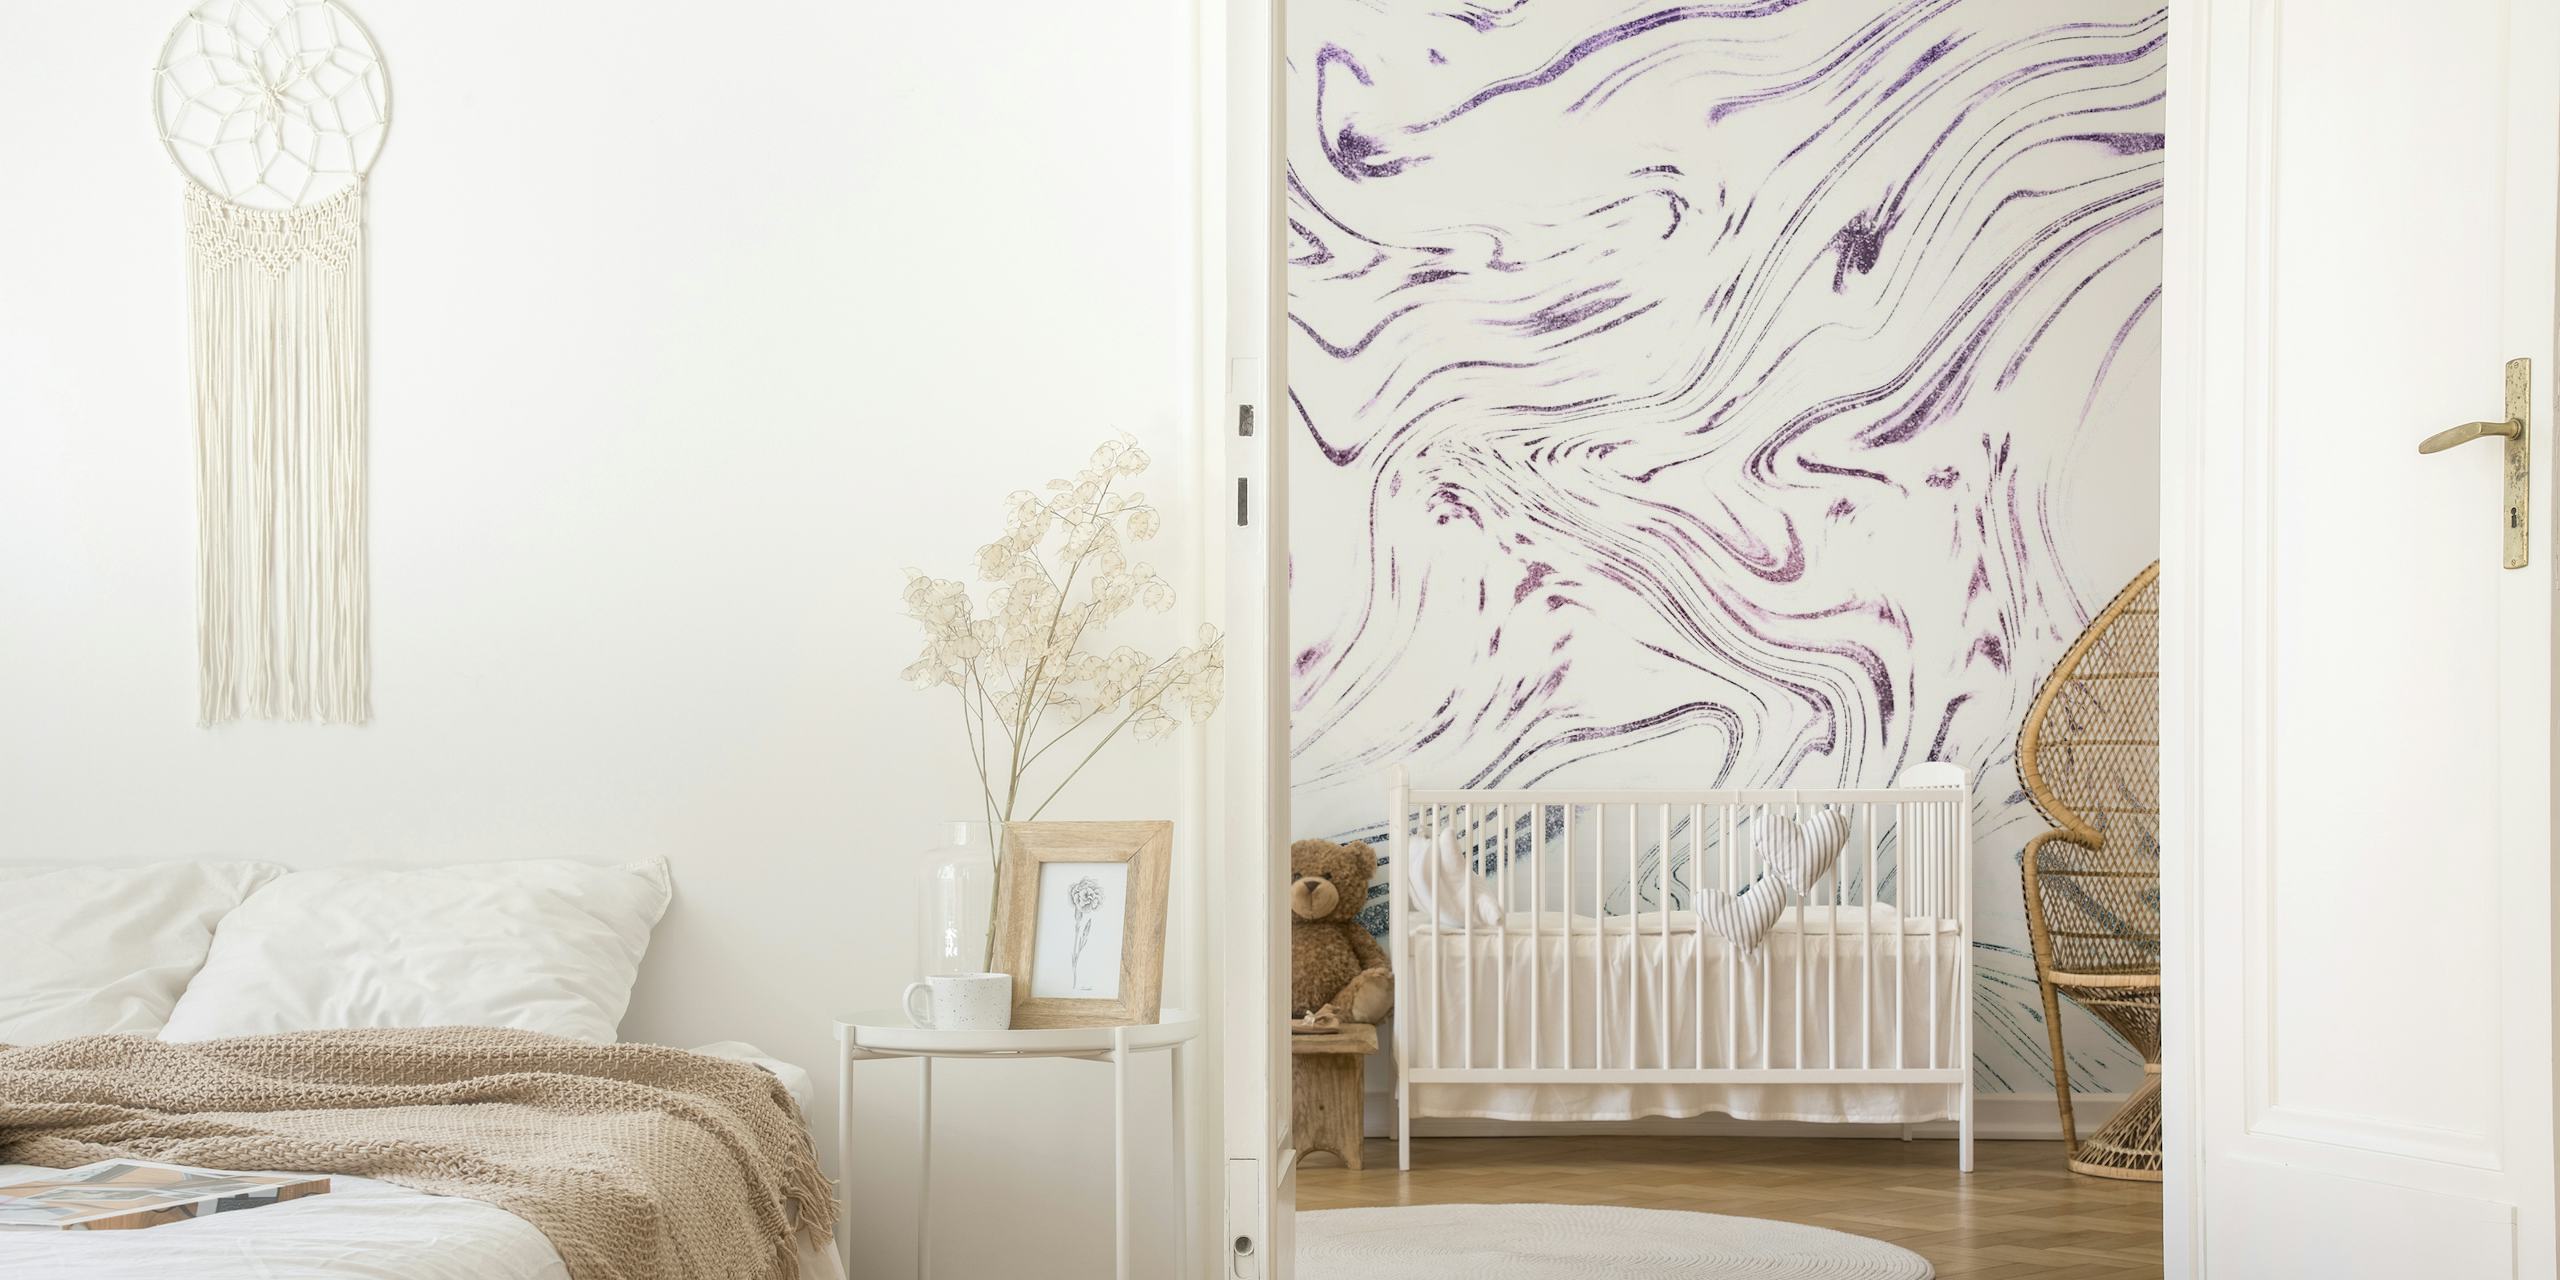 Murale fantaisiste en marbre pailleté inspirée d'une licorne avec des tourbillons de rose, violet et argent